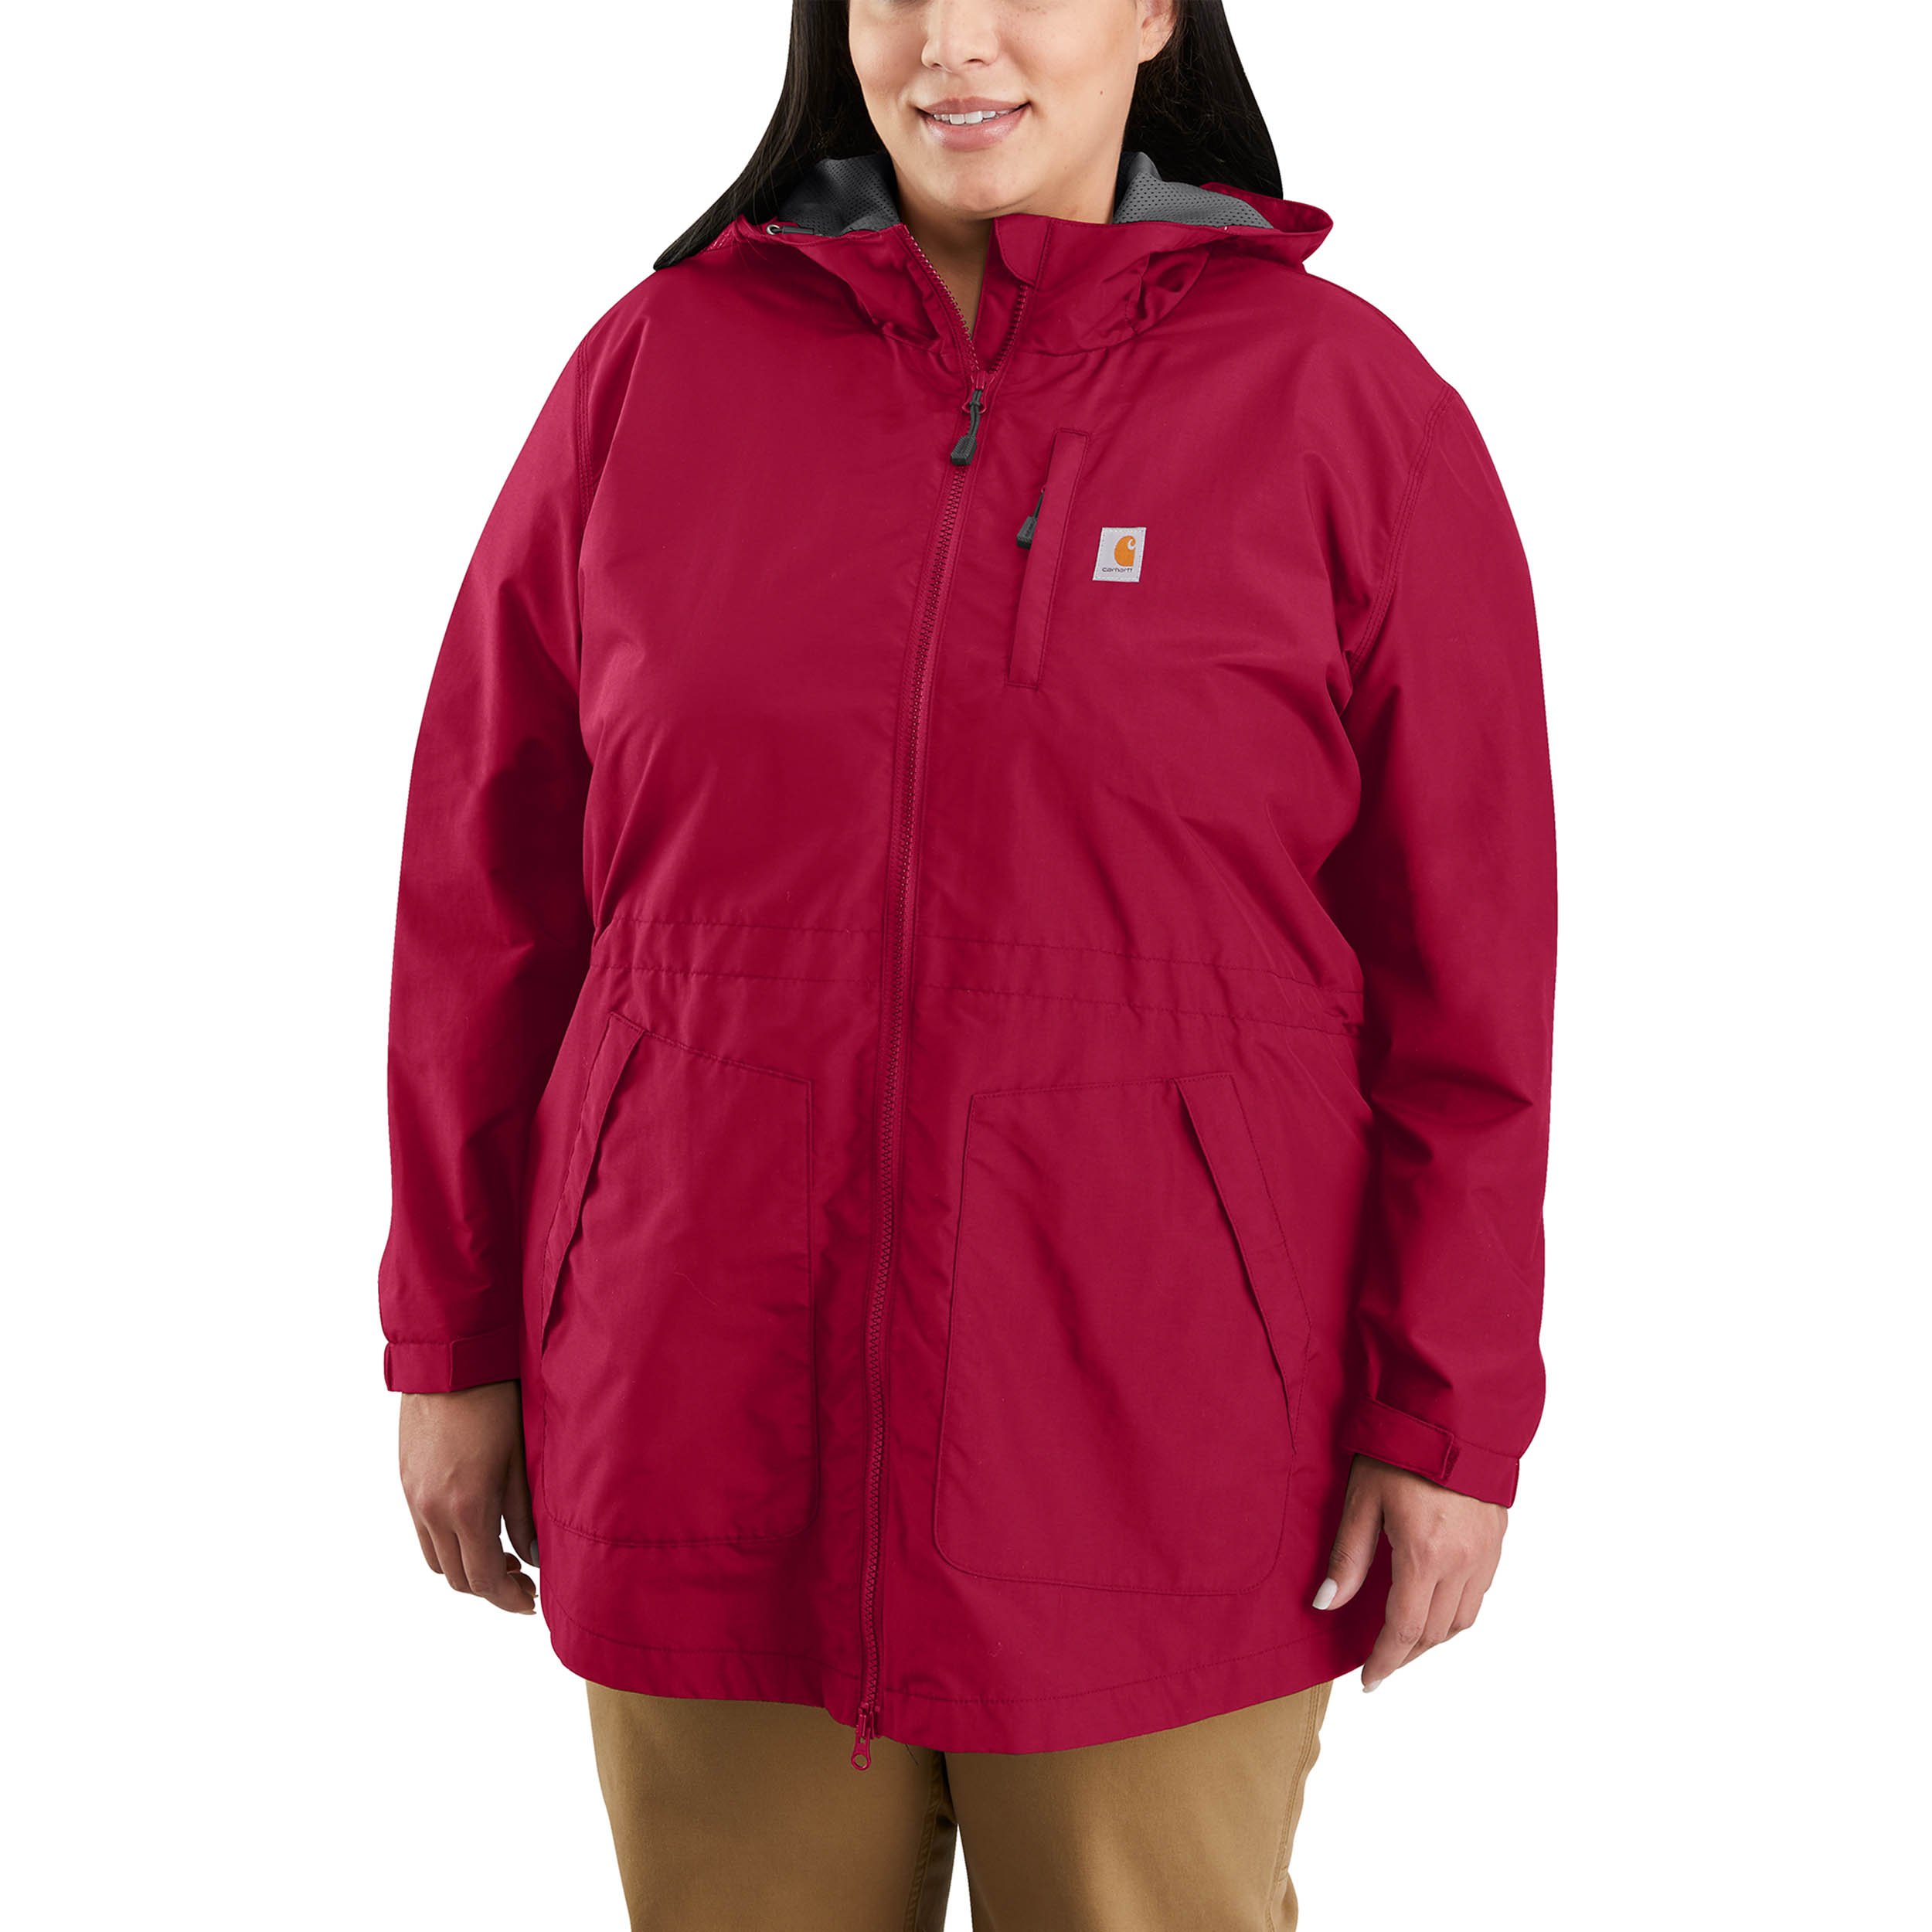 Carhartt Women's FR Full Swing Quick Duck Sherpa-Lined FR Jacket